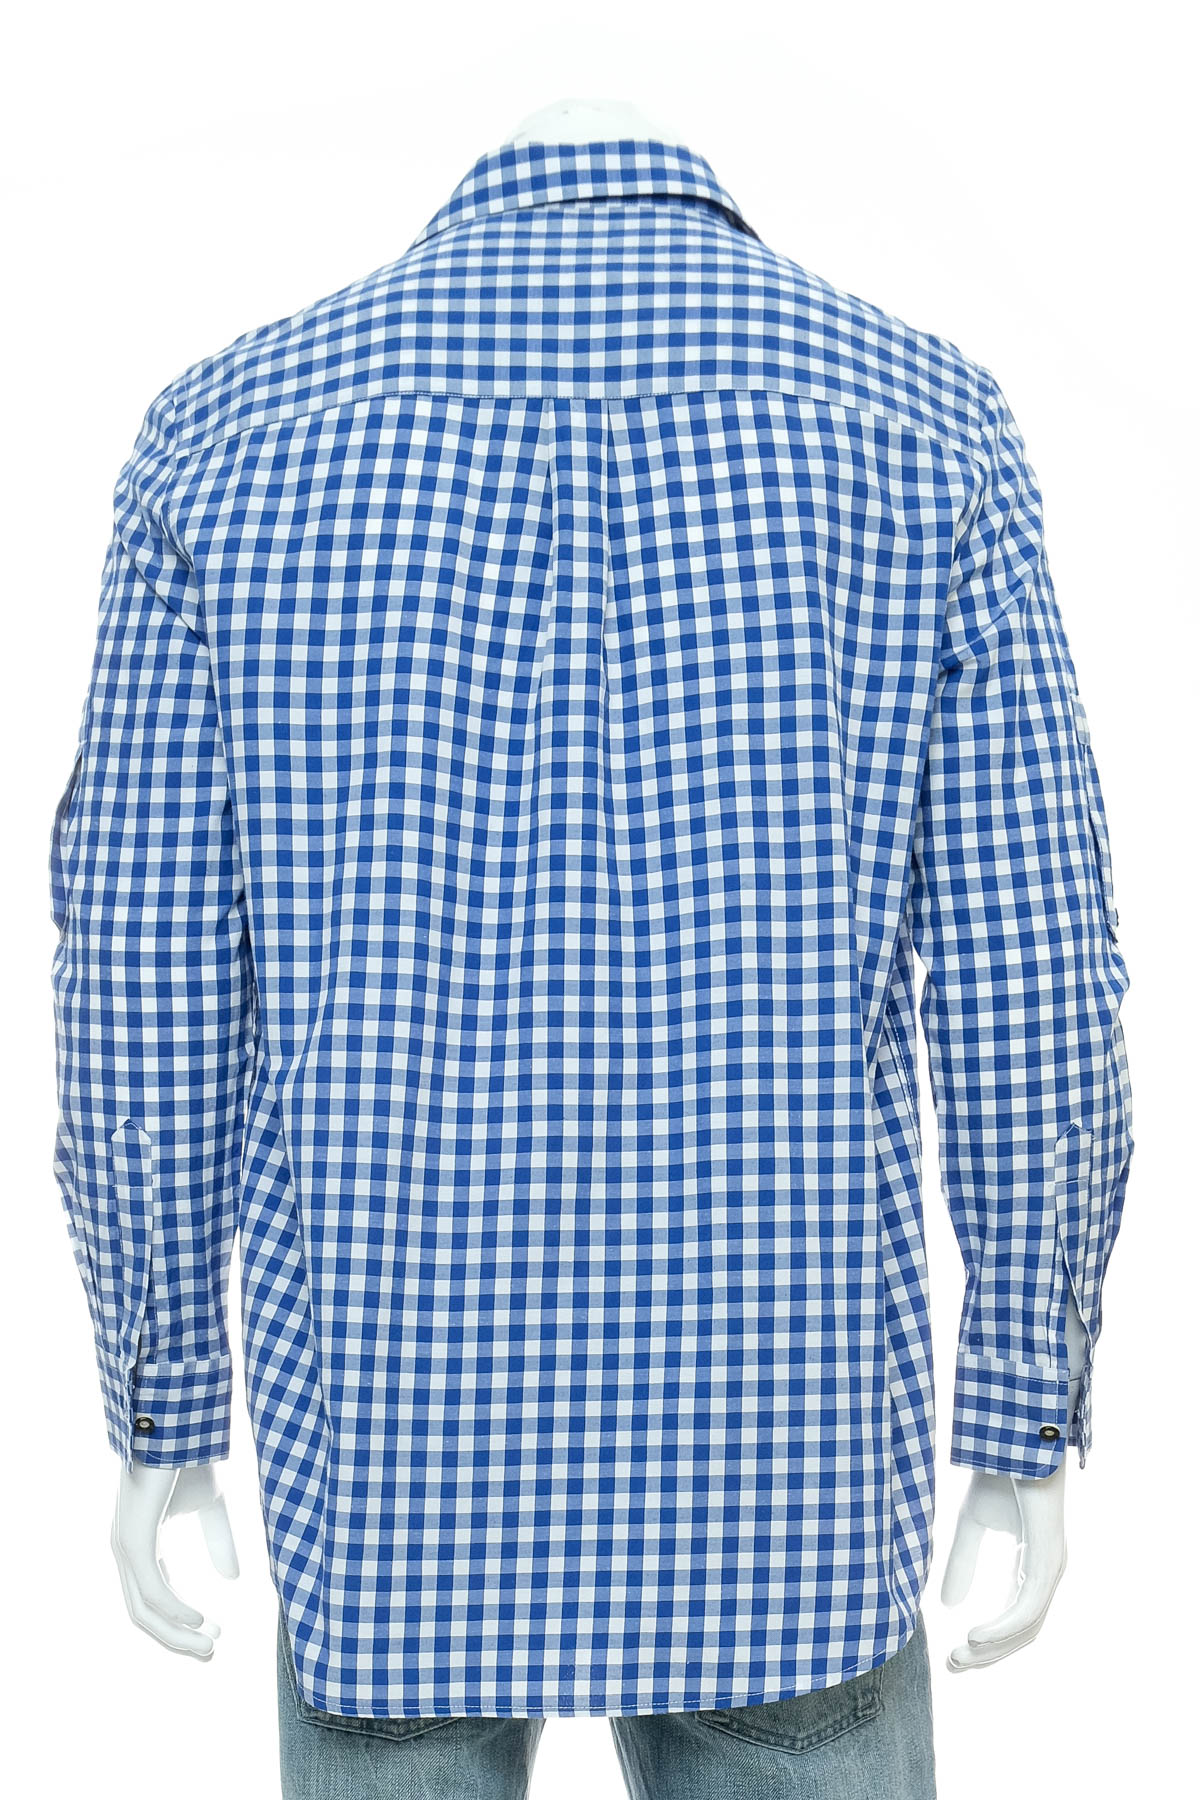 Ανδρικό πουκάμισο - Fuchs Trachtenmoden - 1